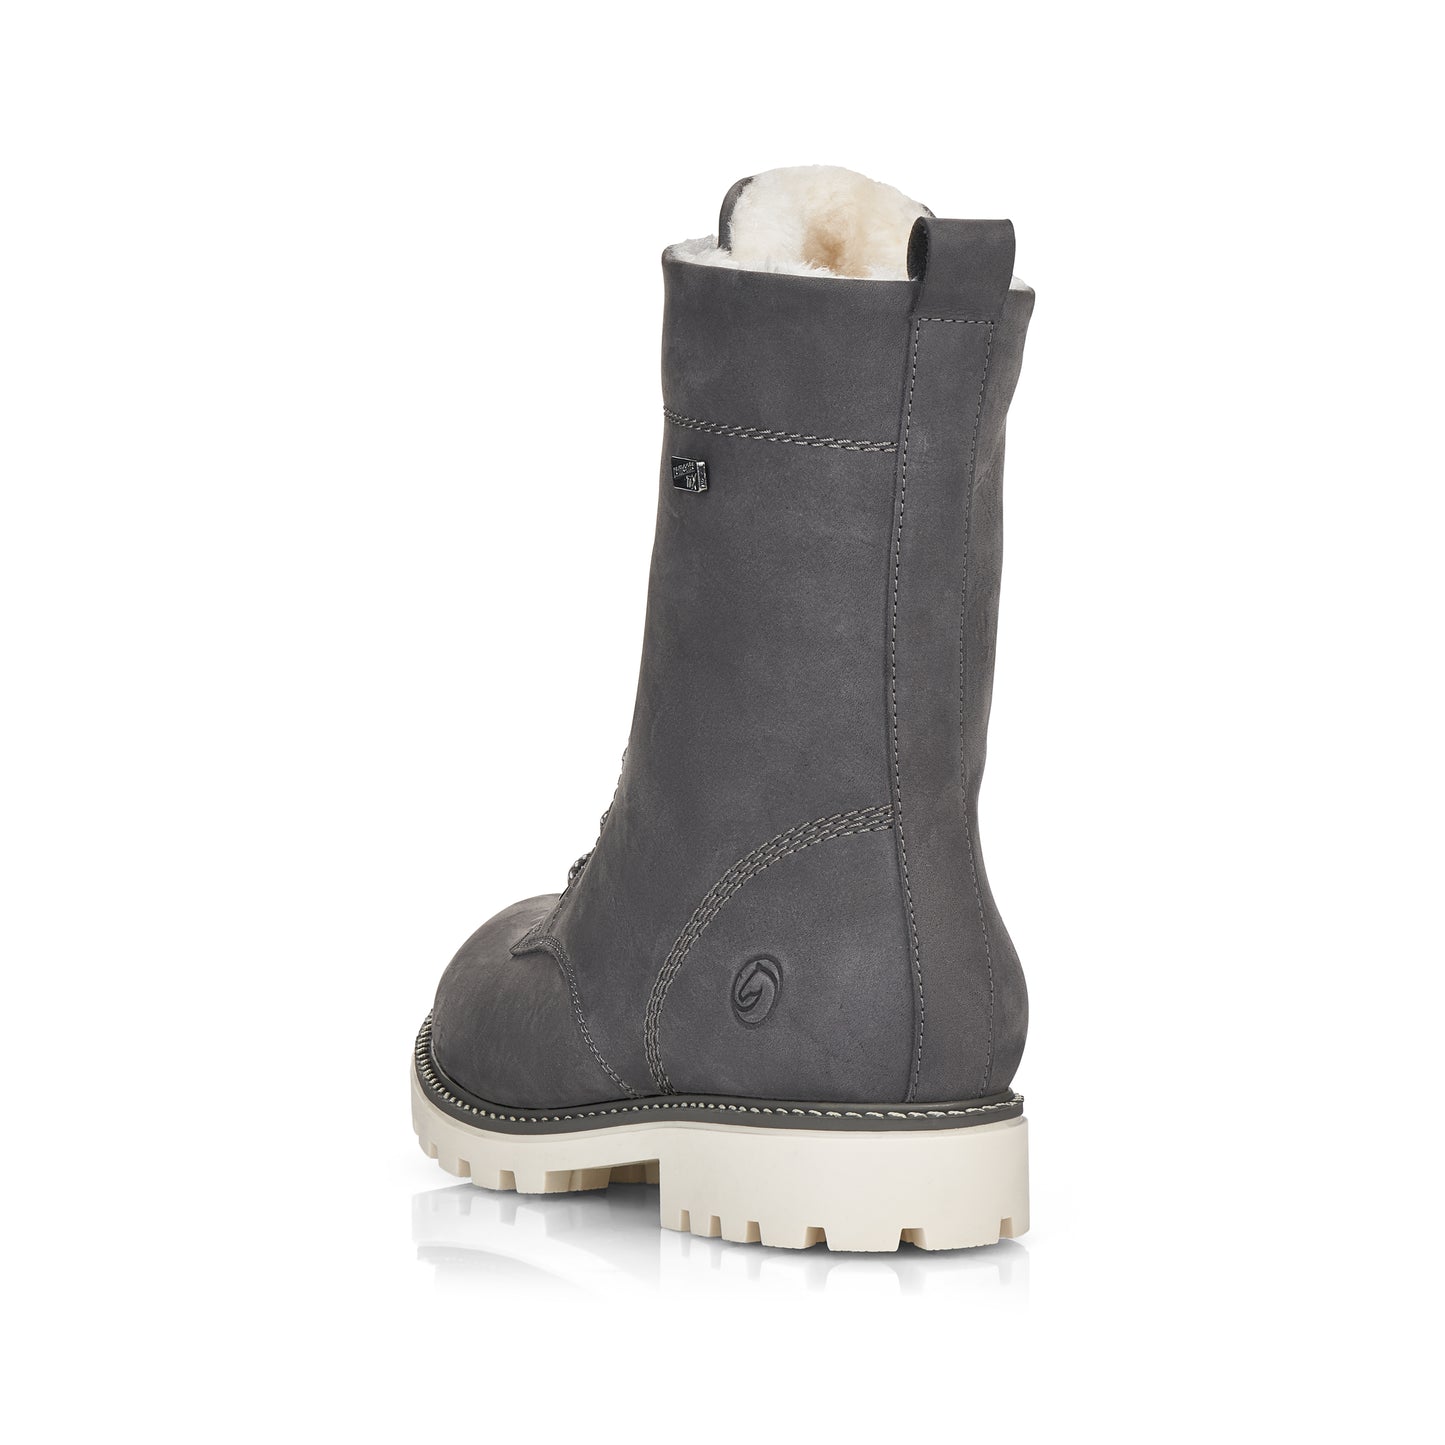 Rieker Women's Samira 76 Water Resistant Boots - Granit/Bianco